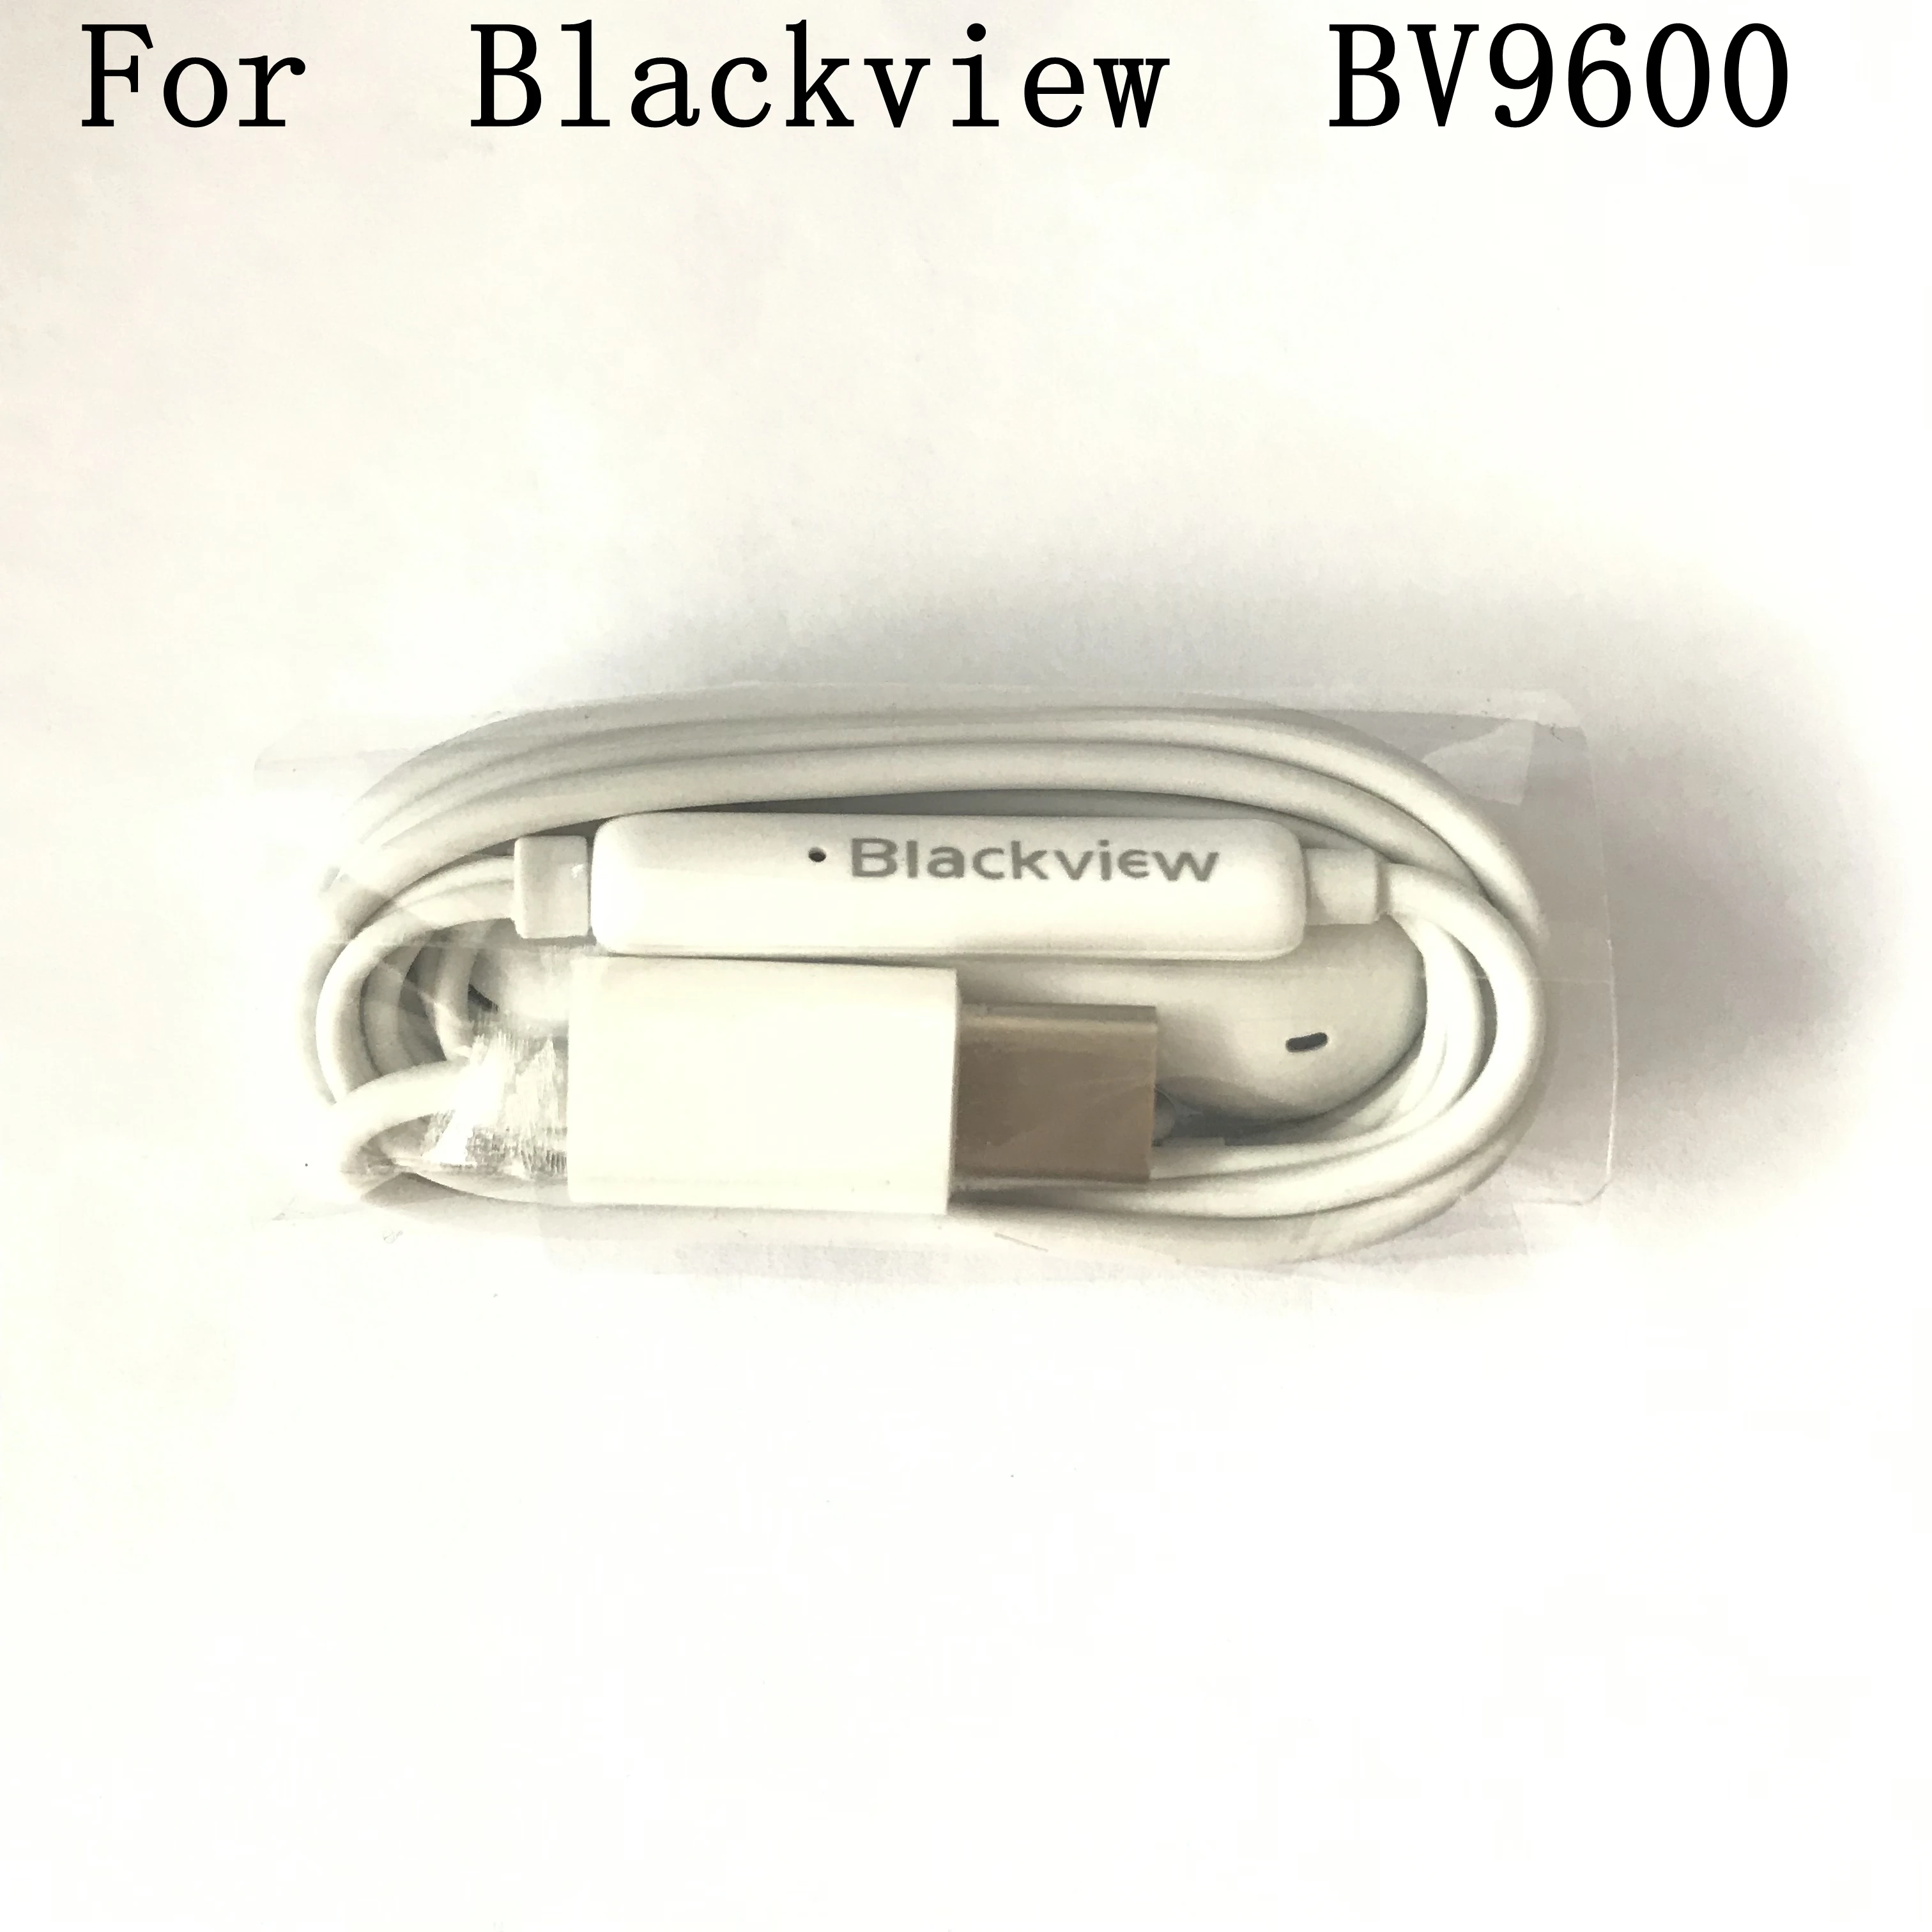 Blackview BV9600 оригинальные новые наушники гарнитура для Blackview BV9600 Pro MT6771 Восьмиядерный, 2,0 ГГц 2248x1080 смартфон